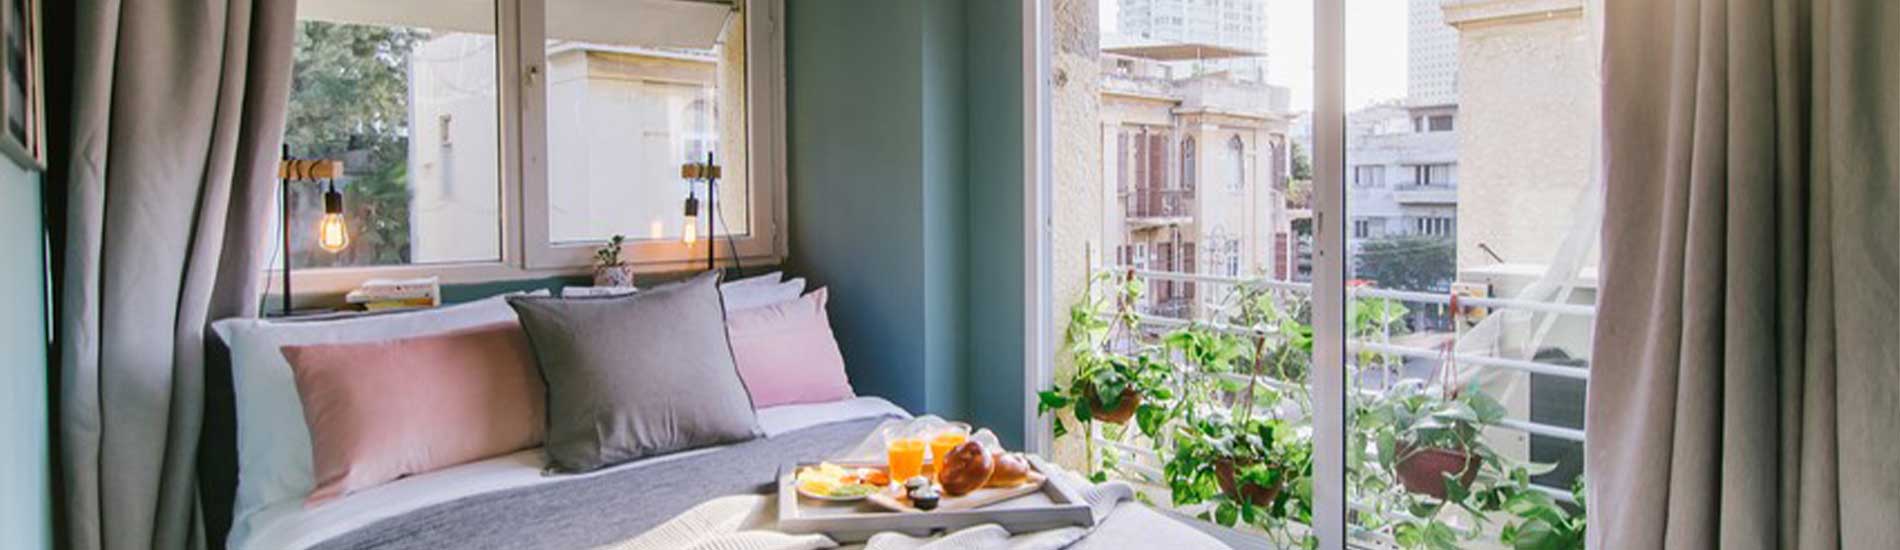 מלון מונוכרום תל אביב חדר במלון מיטה זוגית חלון לתל אביב